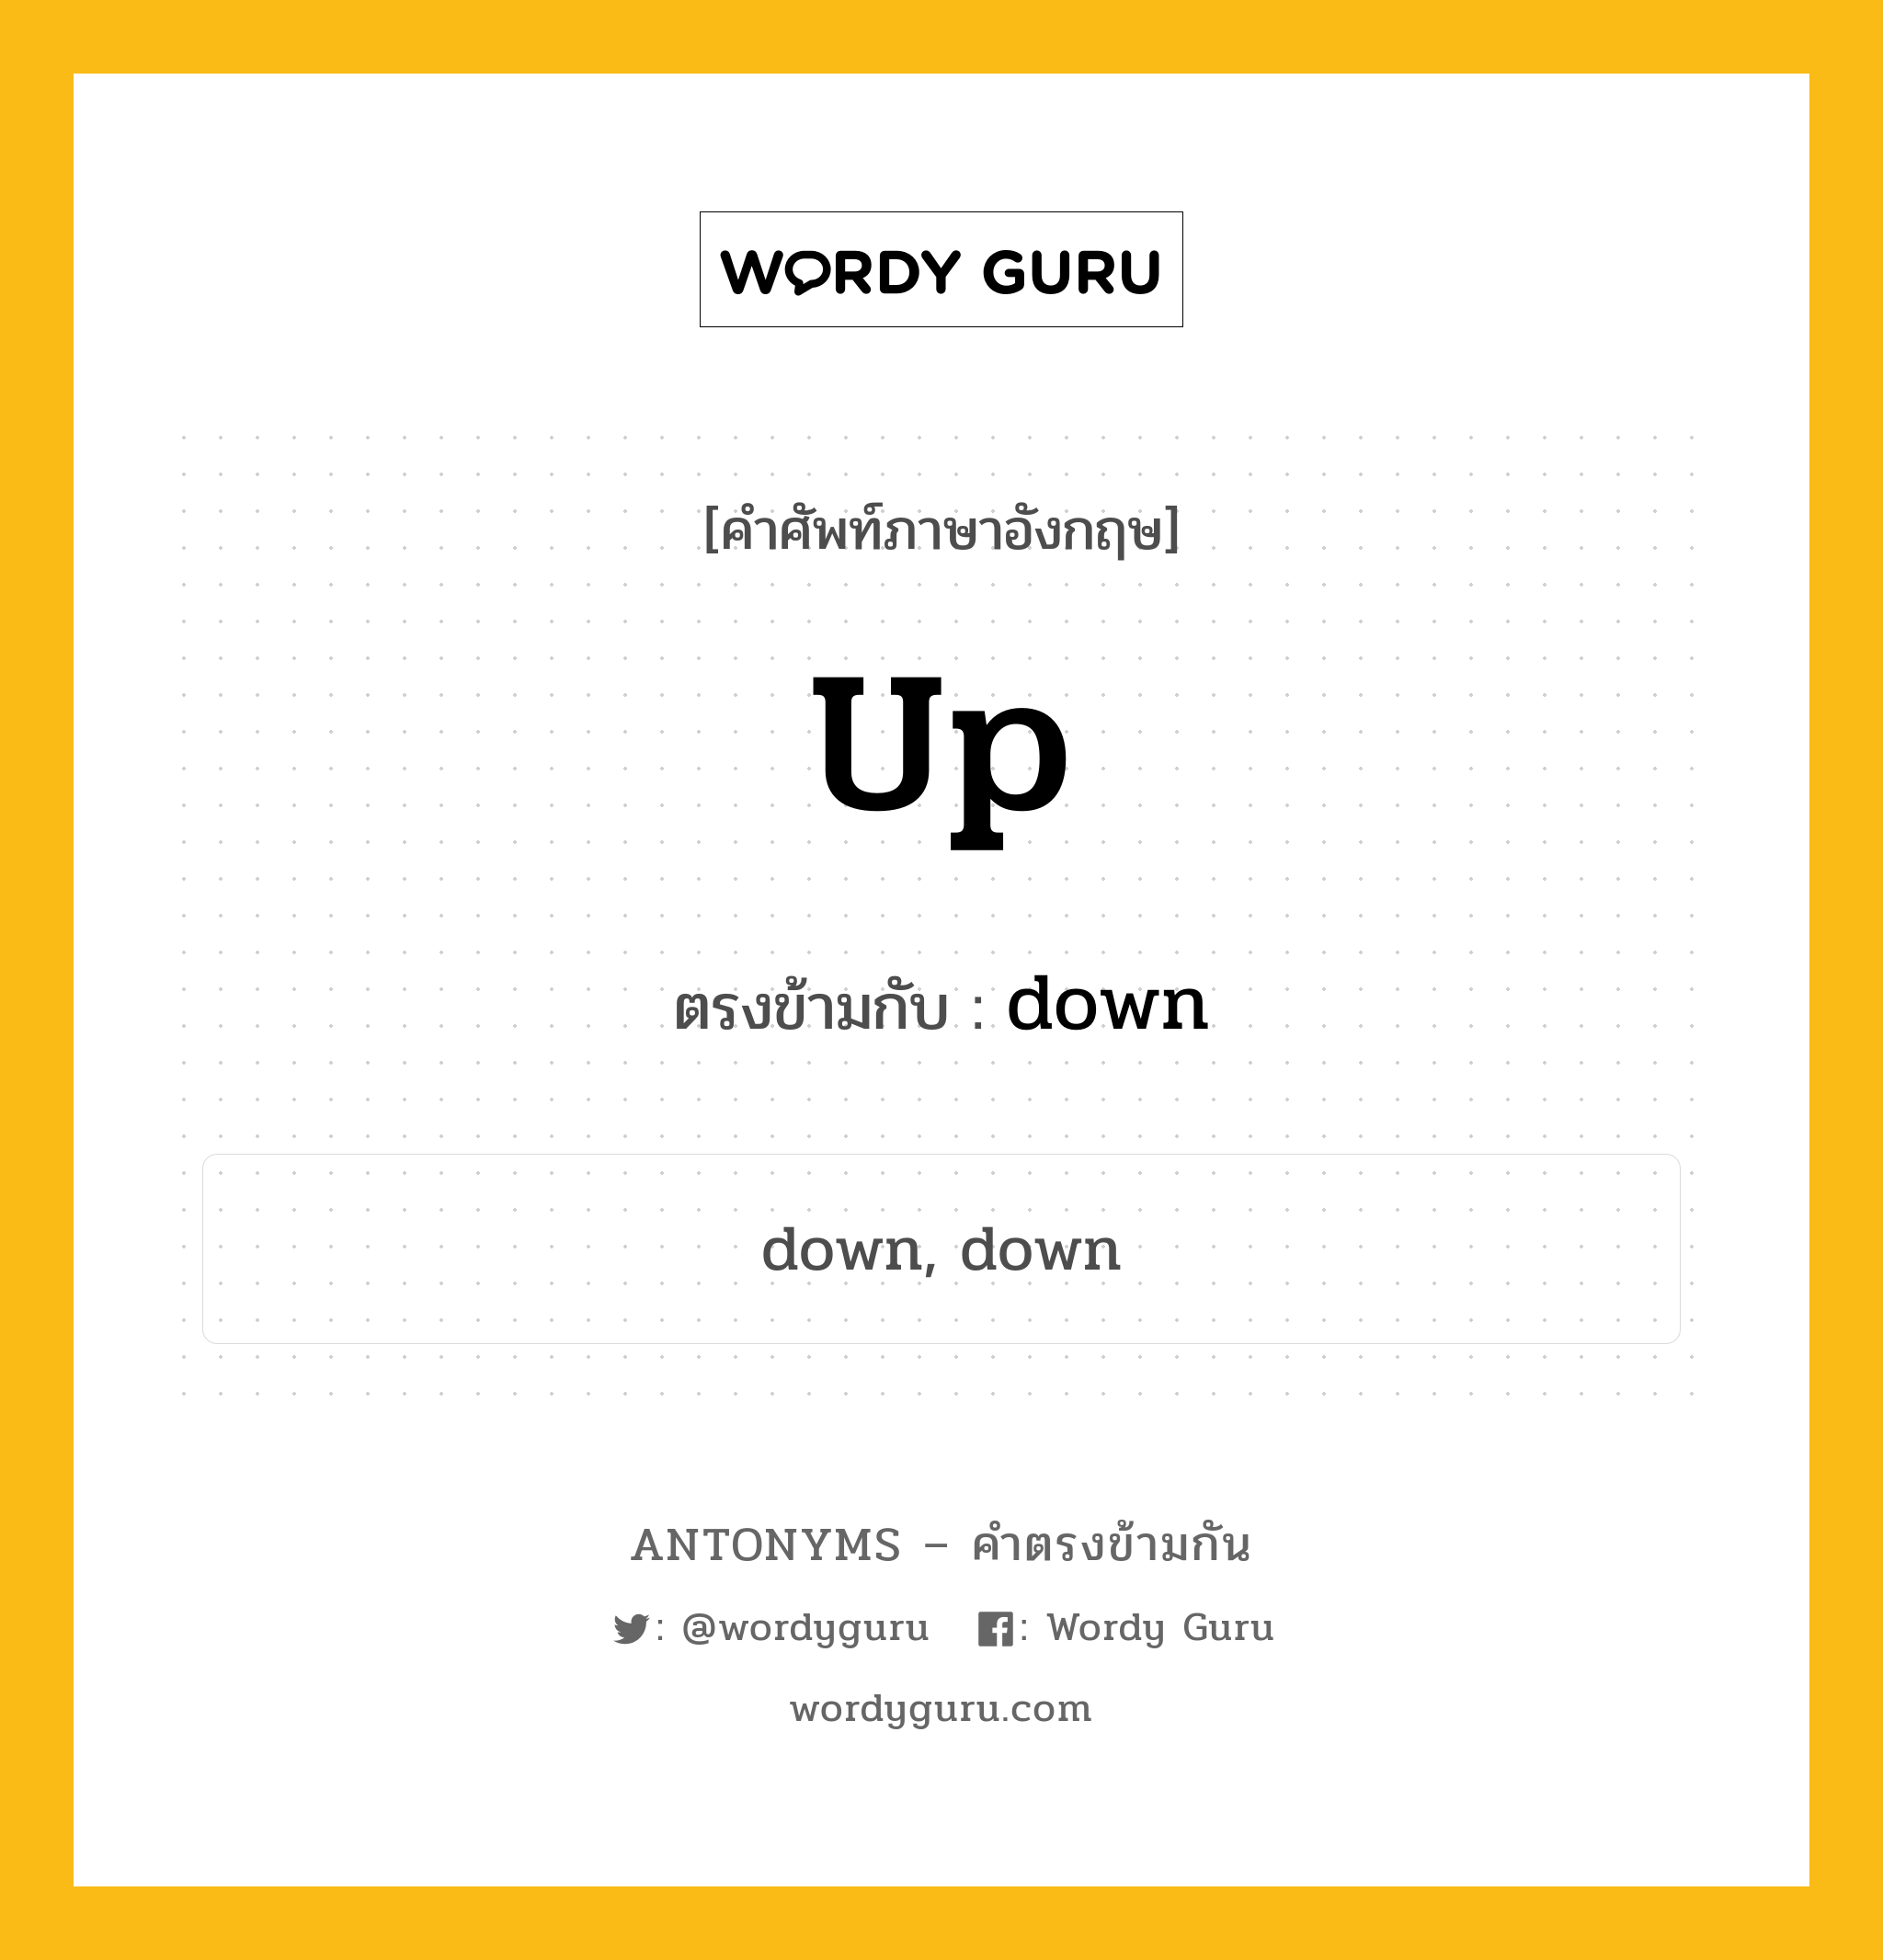 up เป็นคำตรงข้ามกับคำไหนบ้าง?, คำศัพท์ภาษาอังกฤษ up ตรงข้ามกับ down หมวด down